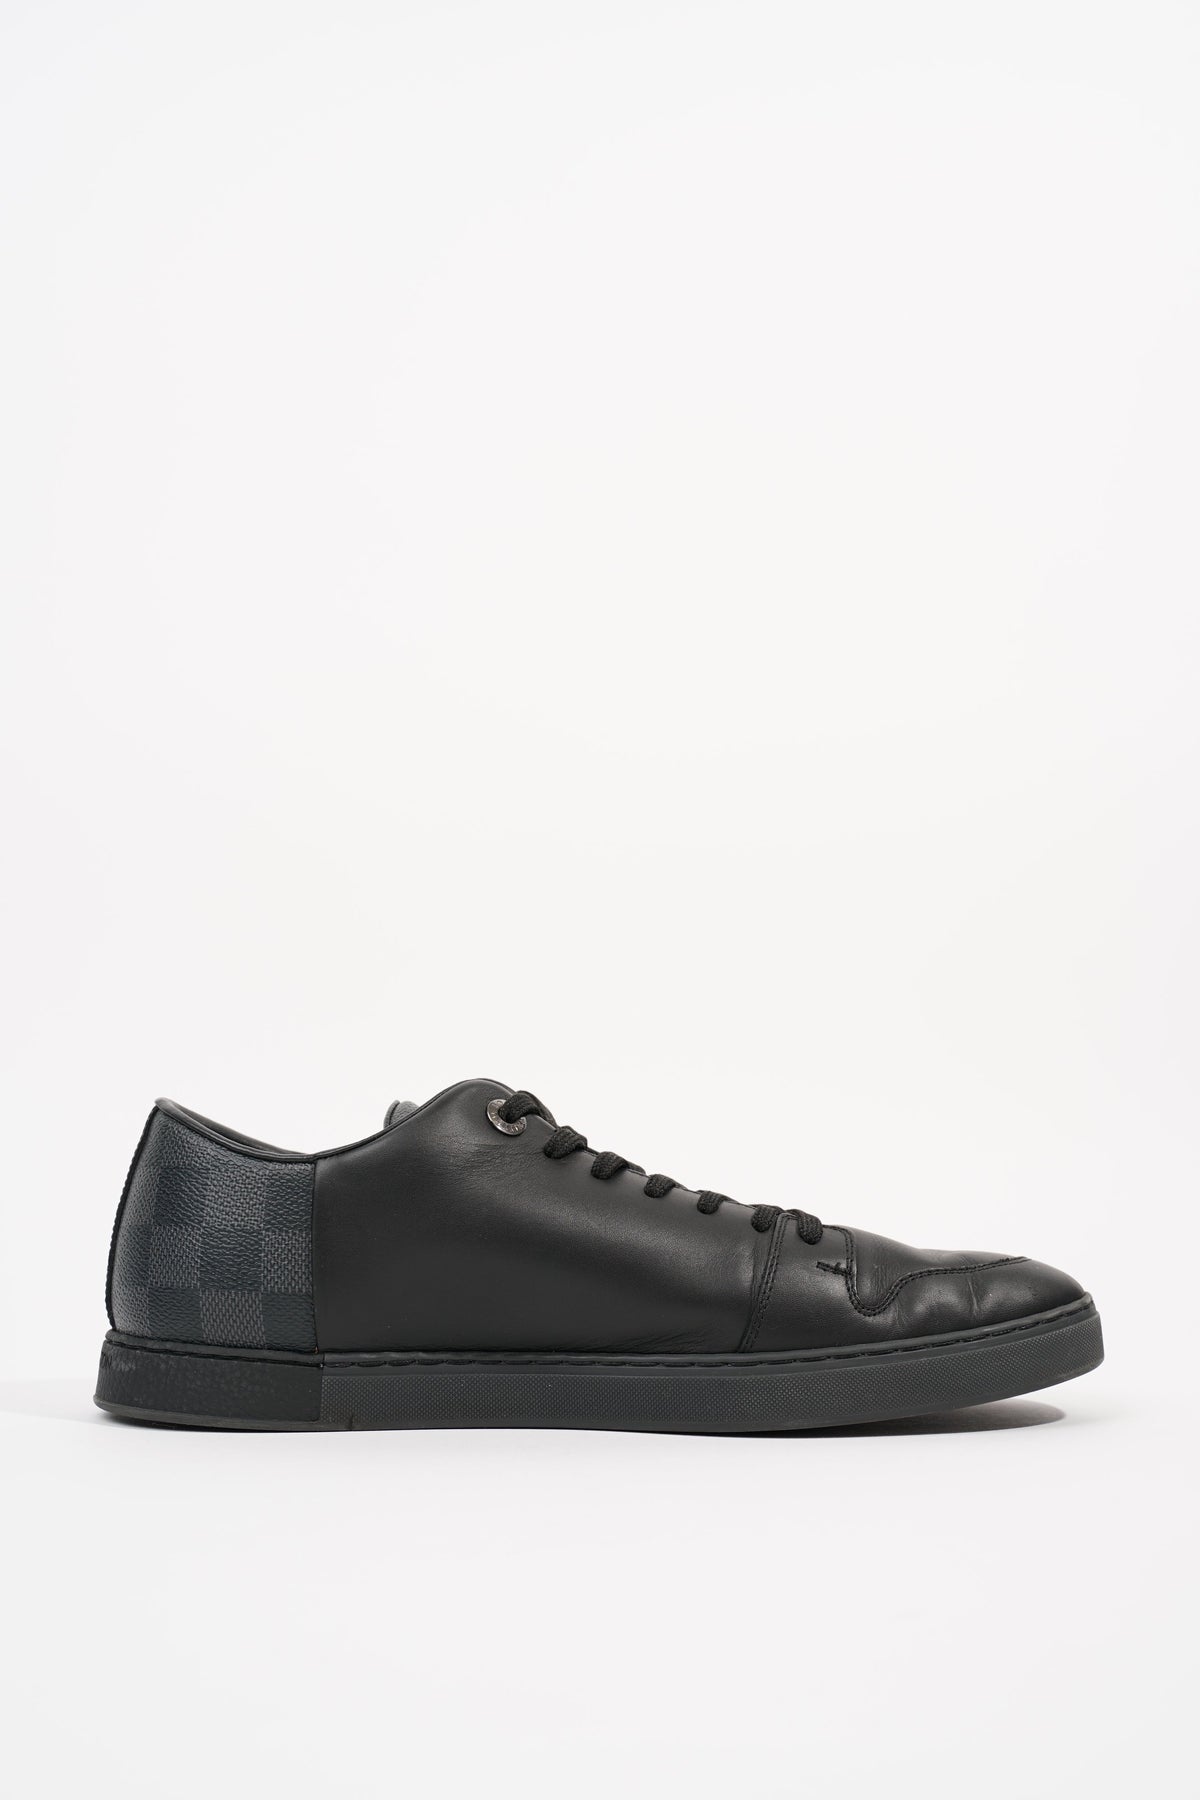 Shop Louis Vuitton DAMIER GRAPHITE Men's Shoes